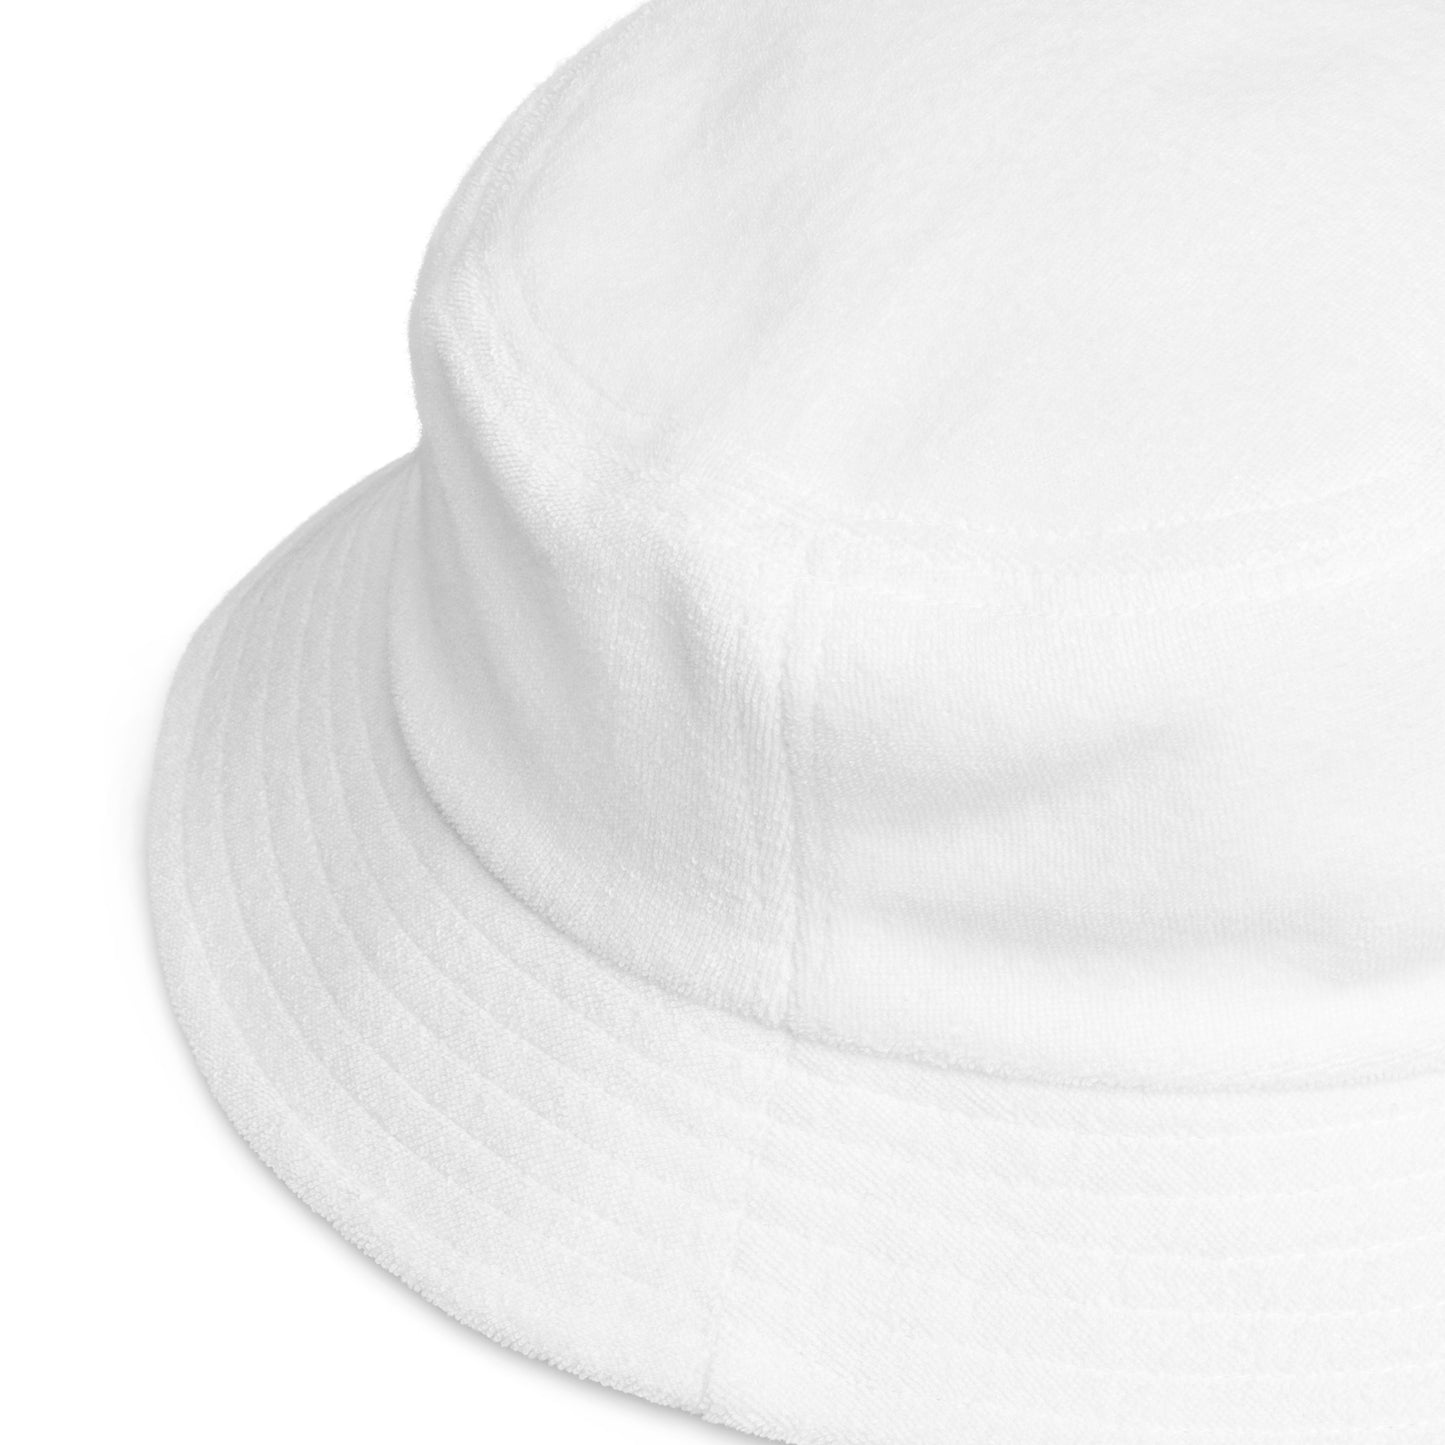 Chapéu bucket de tecido atoalhado não estruturado - Swarez Multi Color